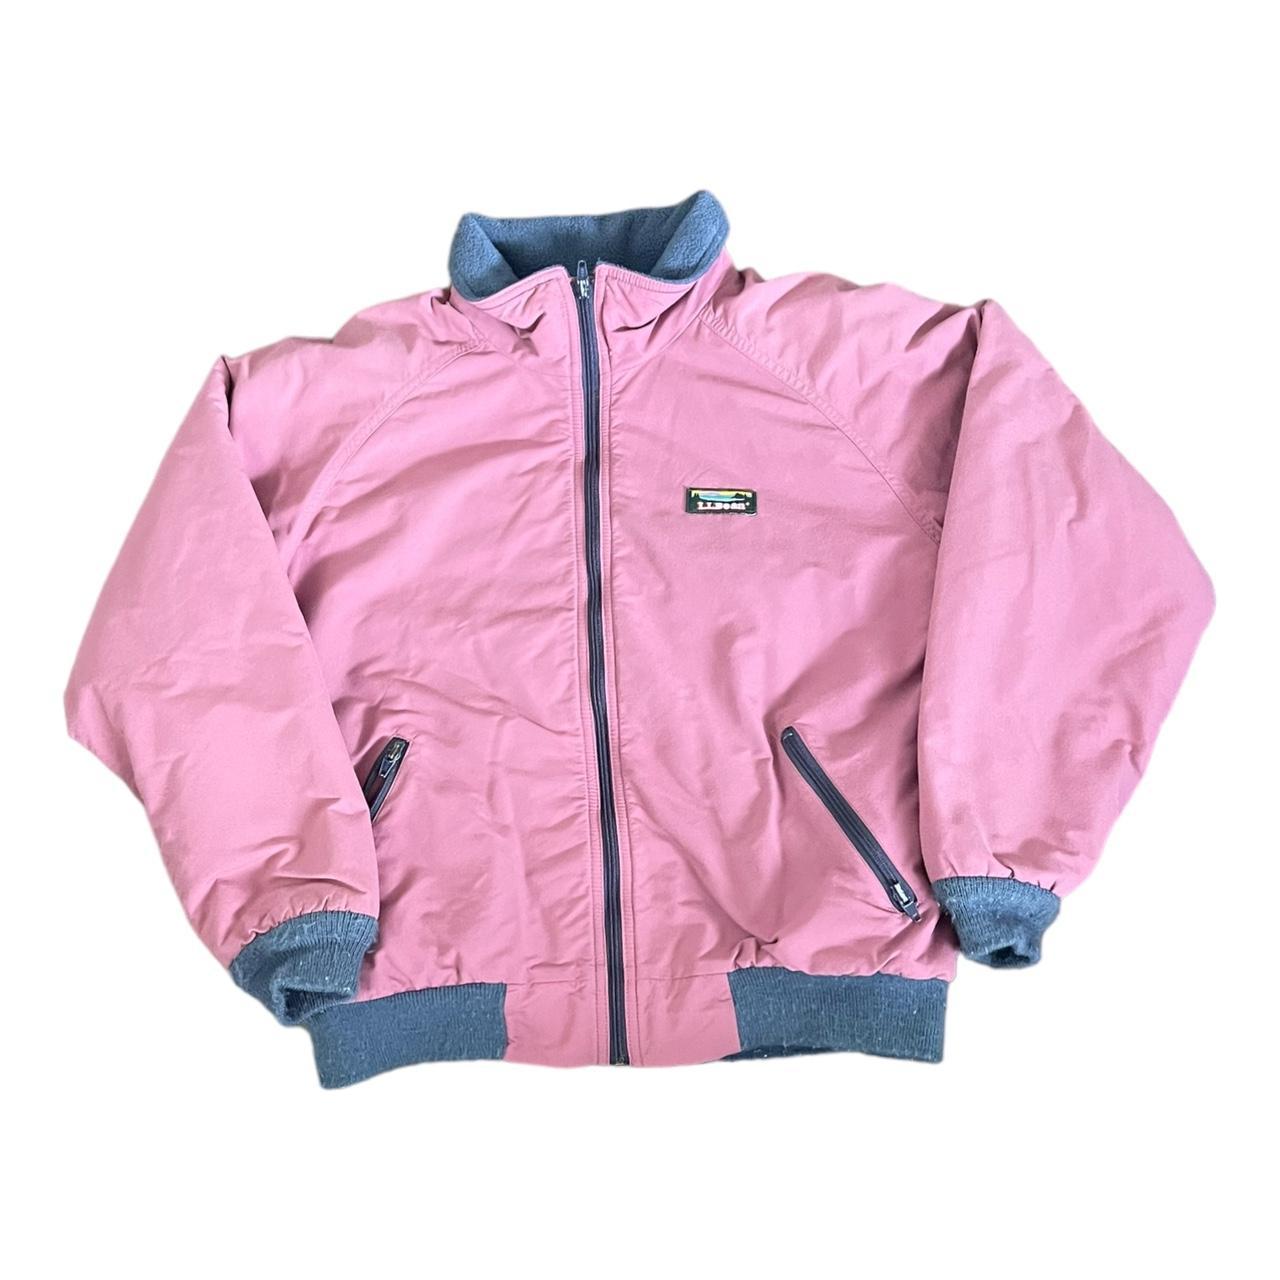 L.L.Bean Women's Pink Jacket